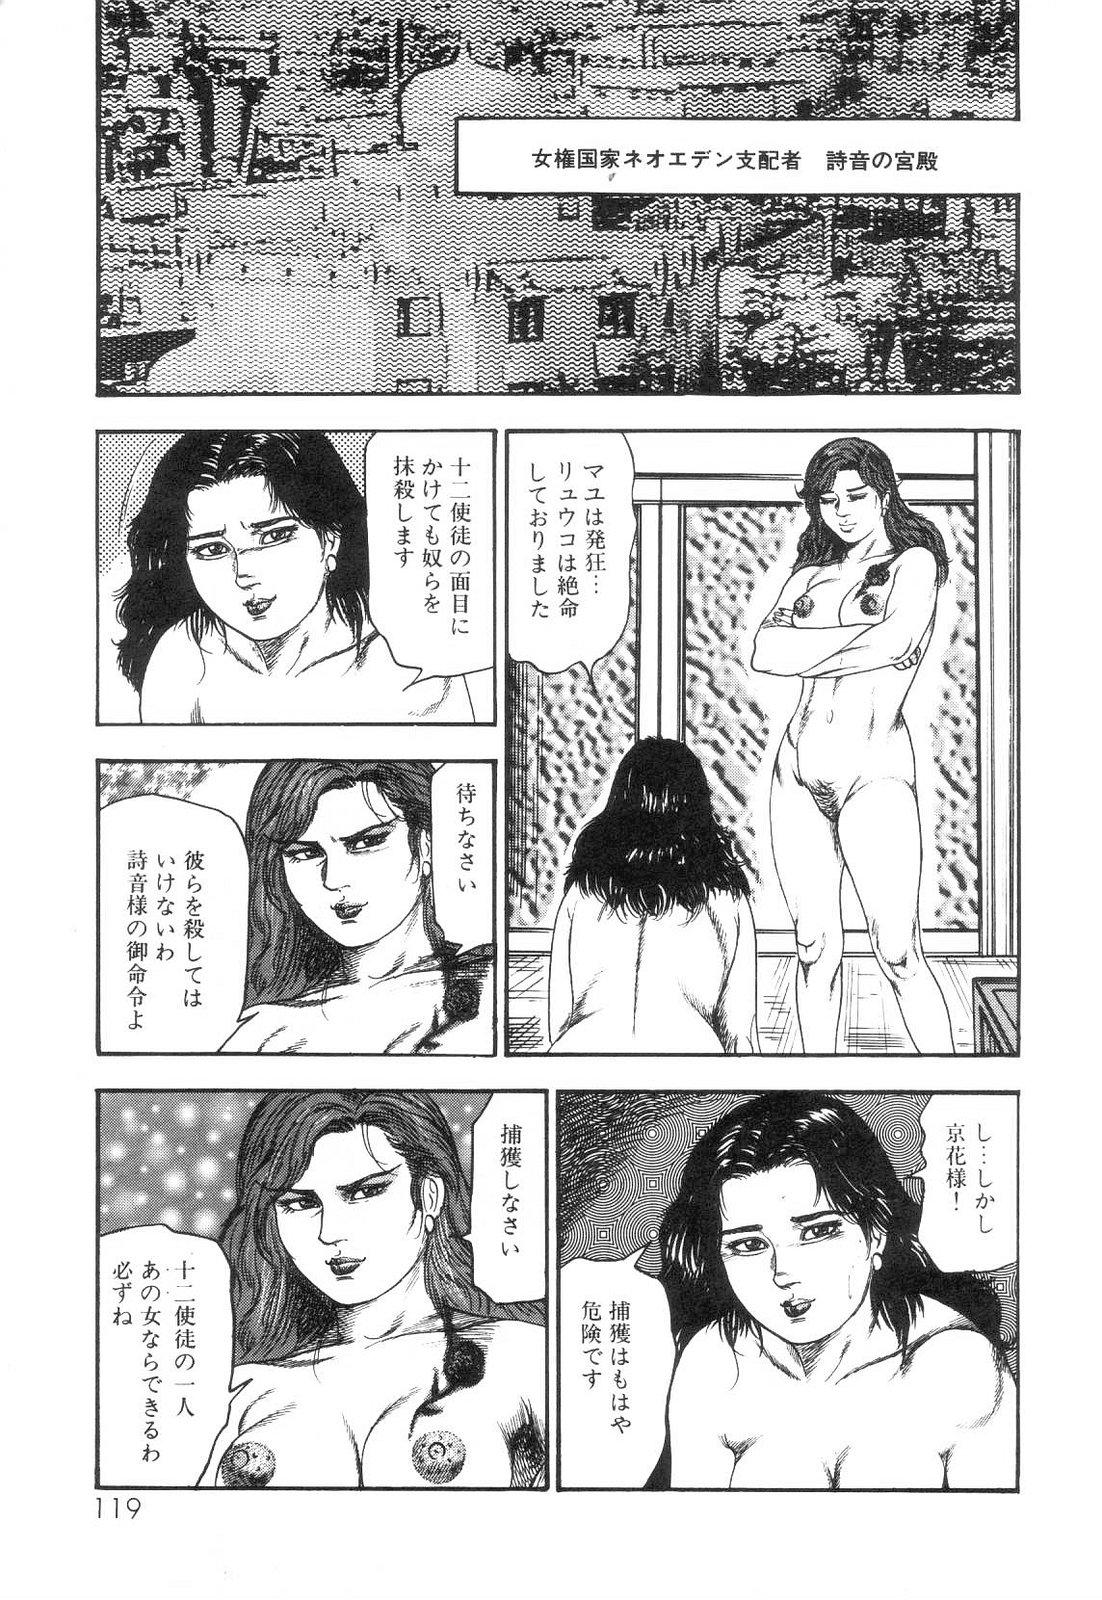 Shiro no Mokushiroku Vol. 6 - Juuai Erika no Shou 120